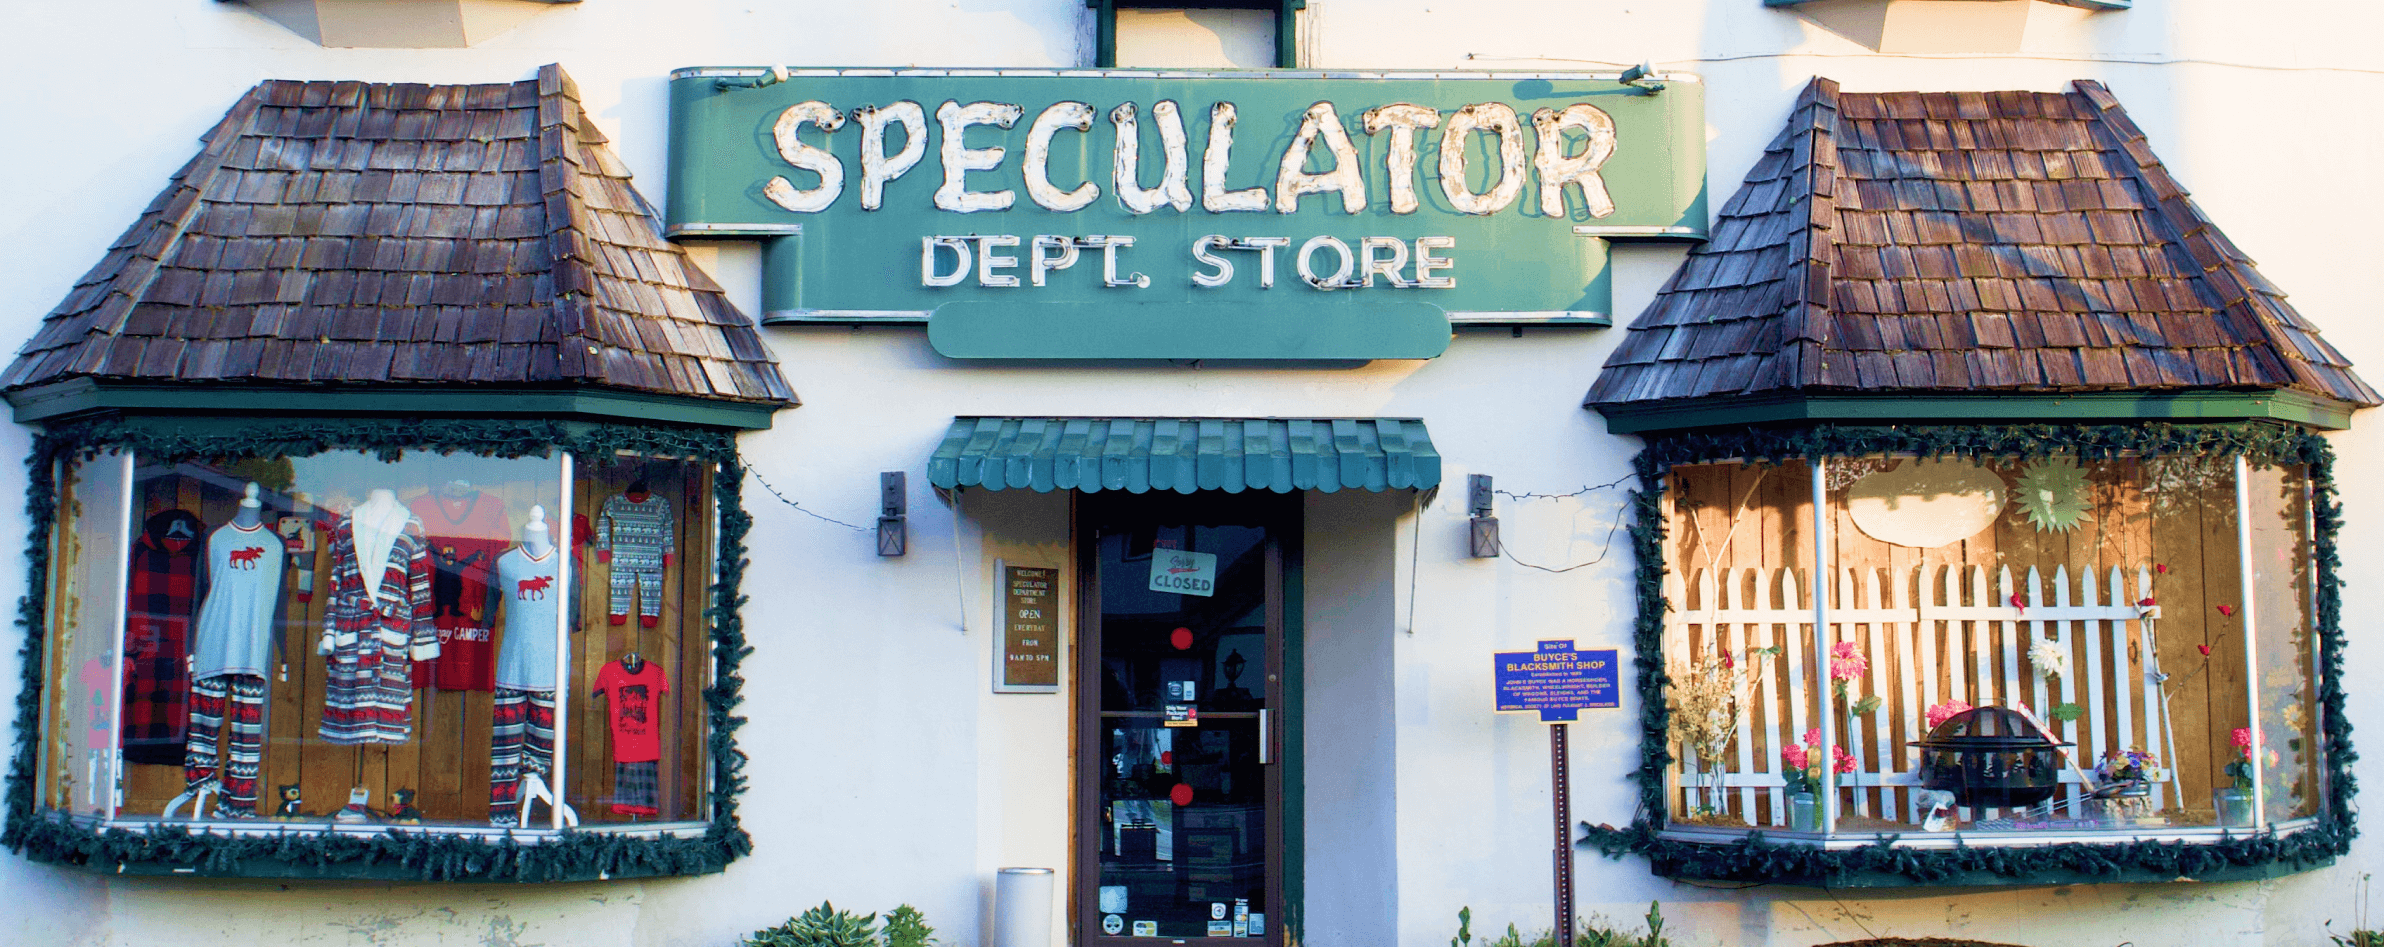 speculator department store